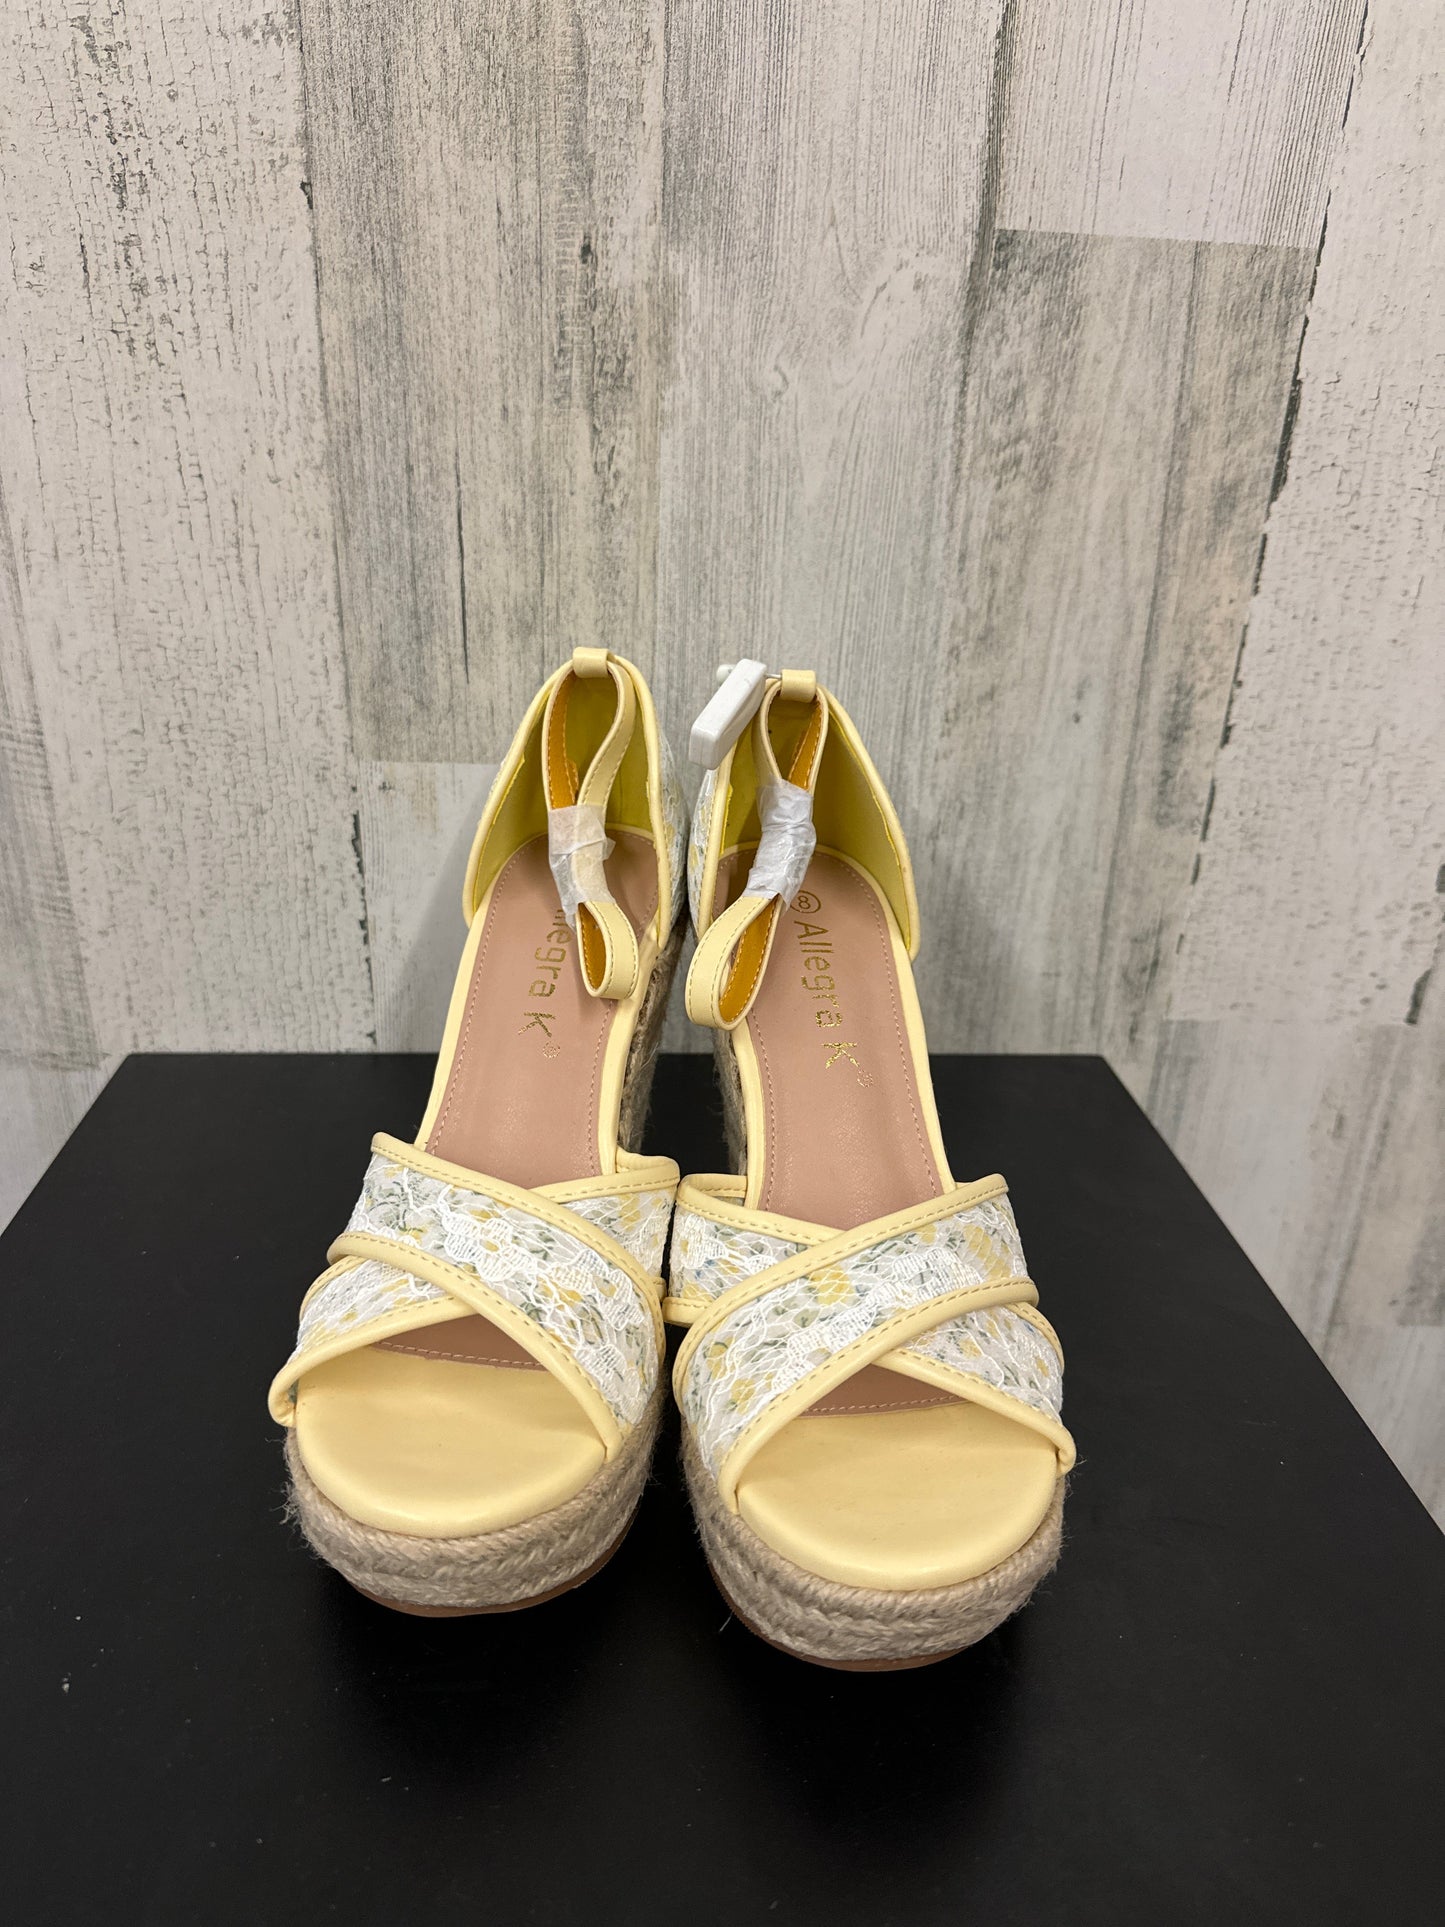 Yellow Sandals Heels Wedge Allegra K, Size 8